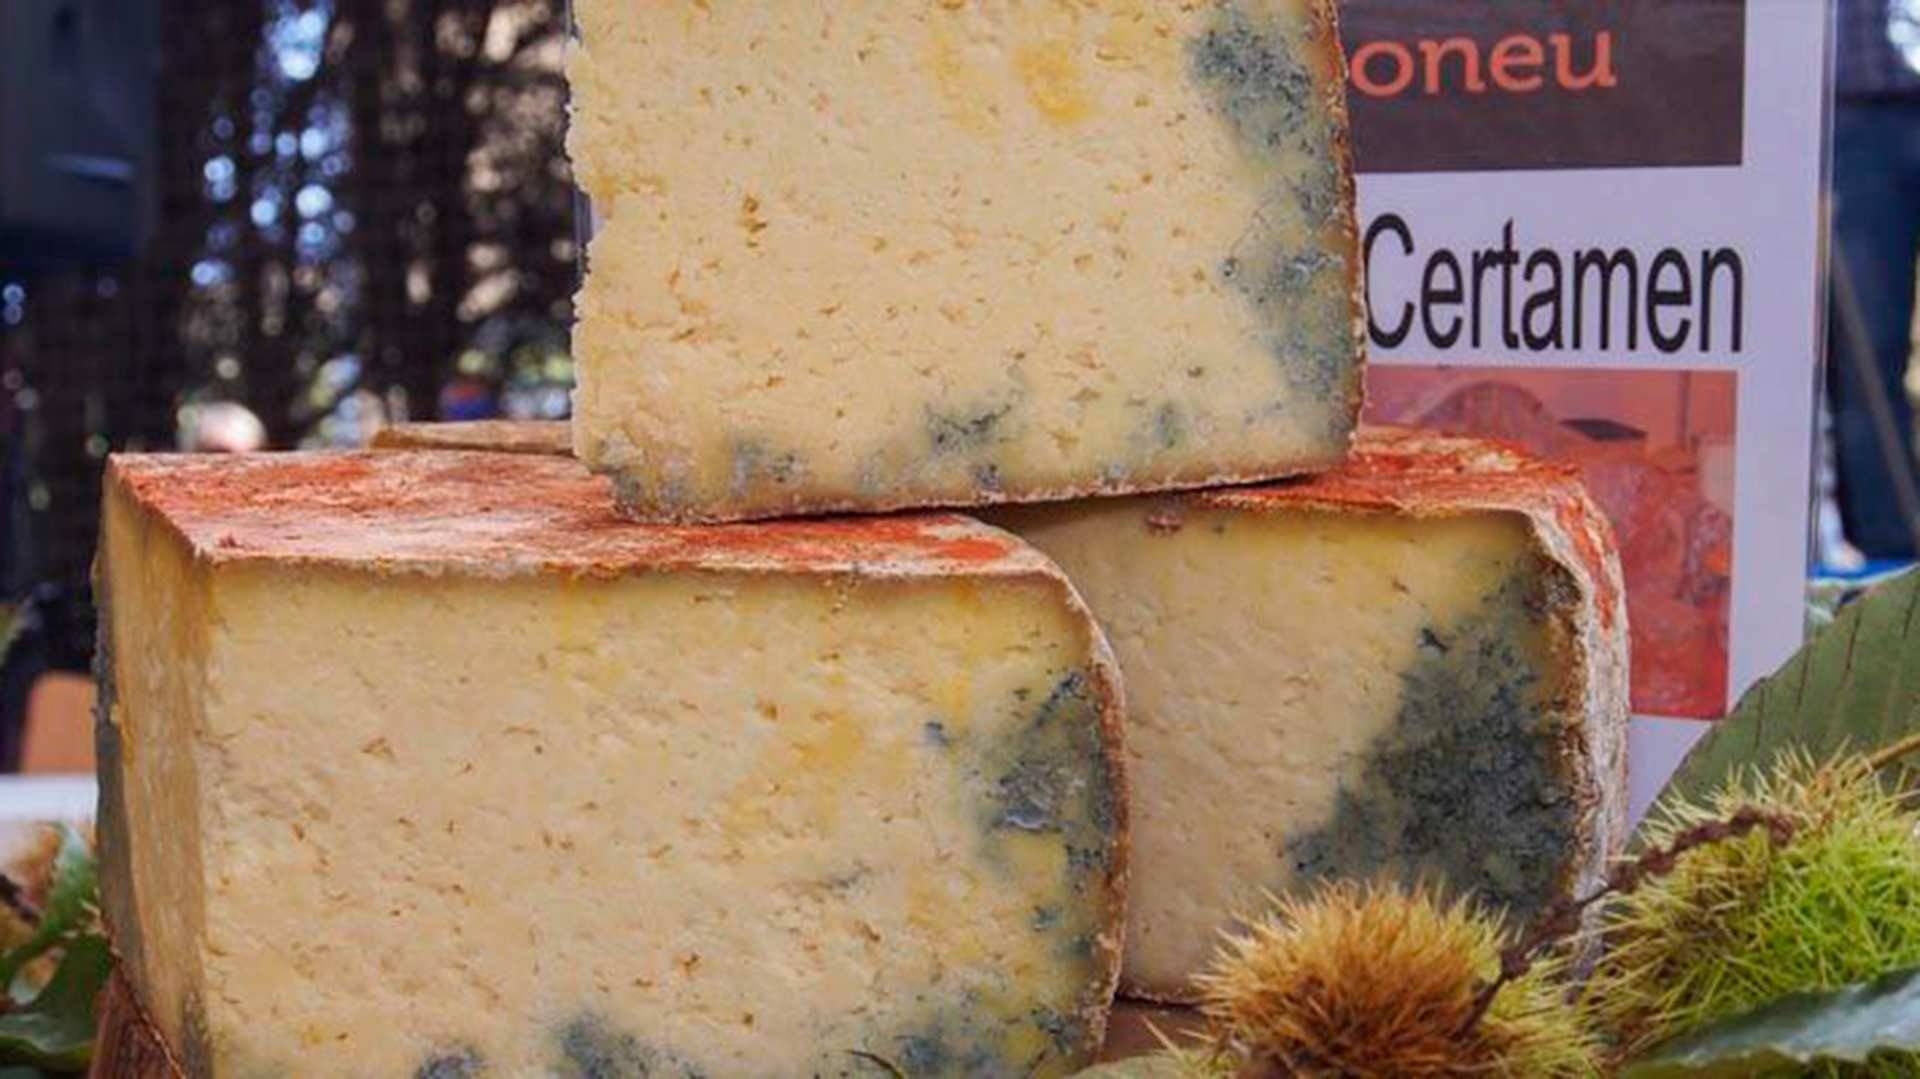 En Benia de Onís se celebra el Certamen Anual de Quesos Gamonéu, con concurso y venta. Foto: ©Juanjo Arrojo. Turismo de Asturias